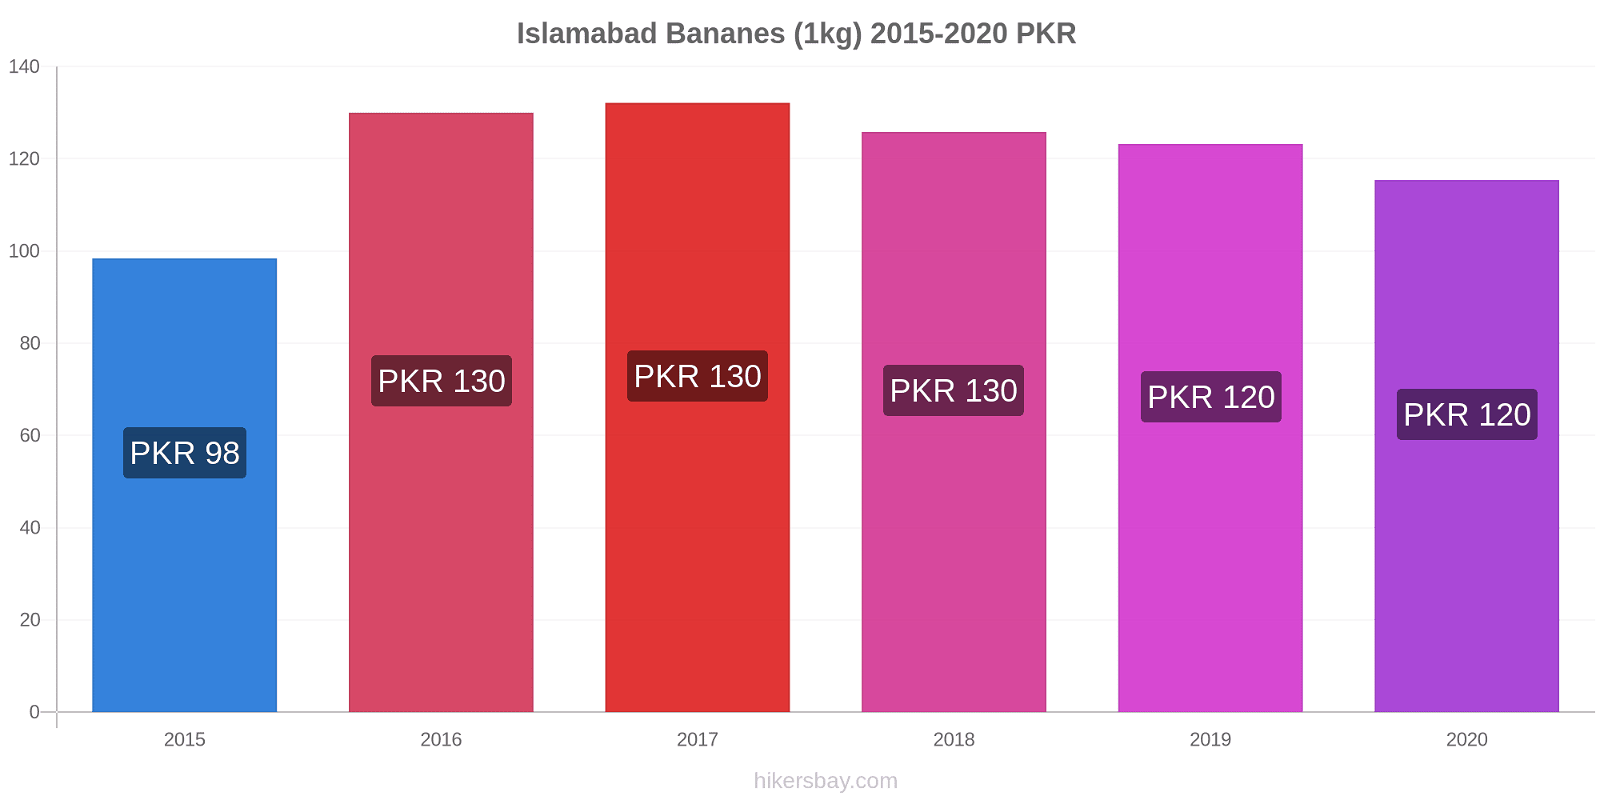 Islamabad changements de prix Bananes (1kg) hikersbay.com